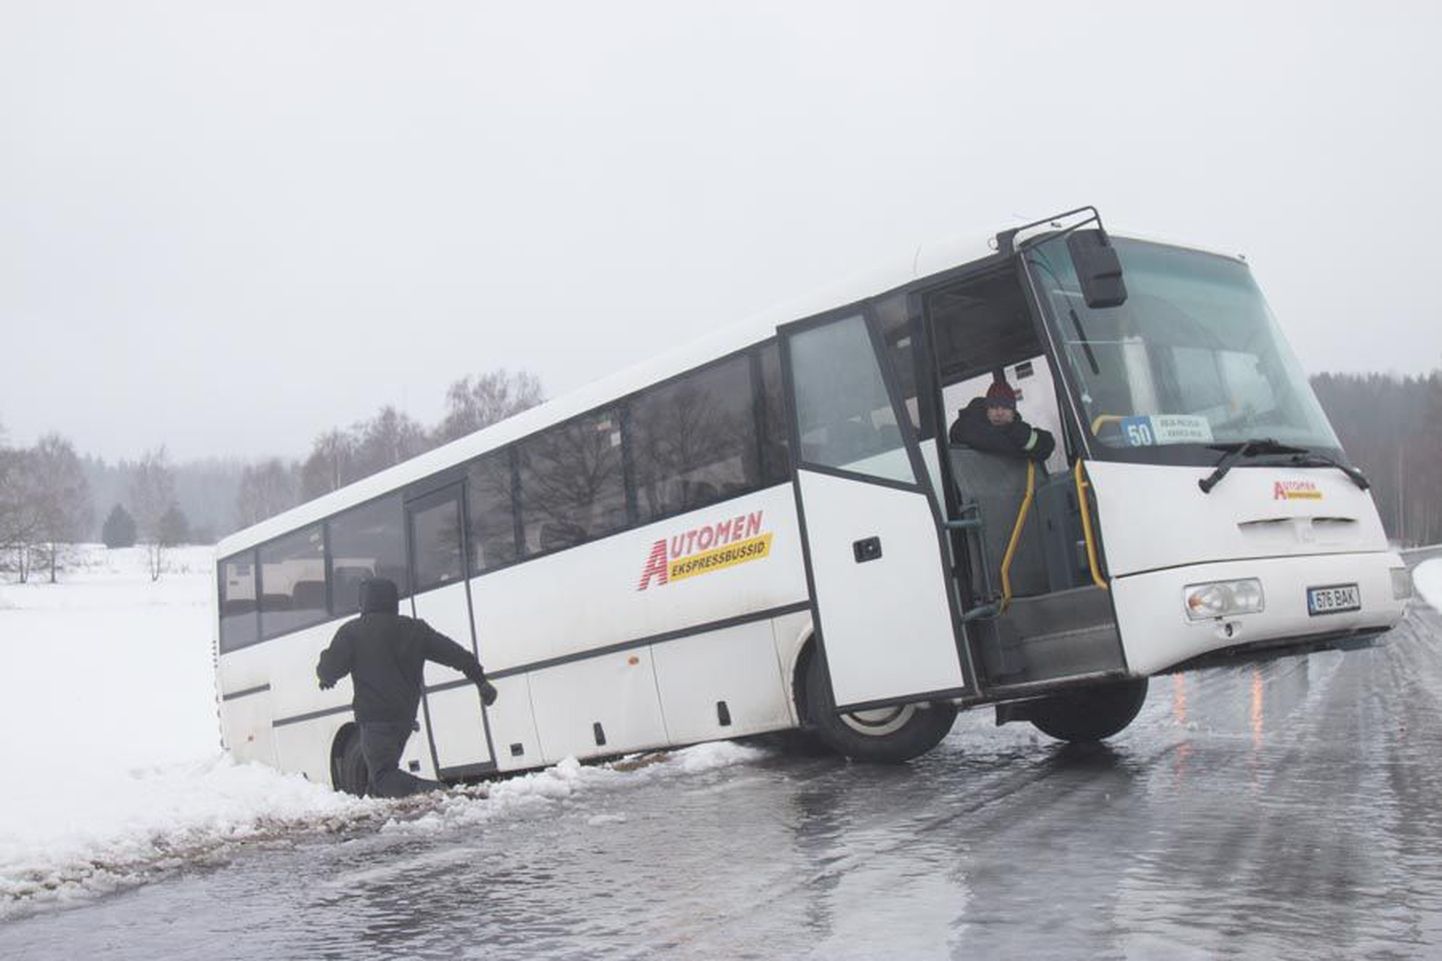 Kui see buss lõpetas eile Sultsi ja Paistu vahelisel teel kraavis, siis mitu teist bussijuhti otsustas libeduse tõttu otsa ringi keerata. Lõplik valik jääbki alati roolikeeraja teha.